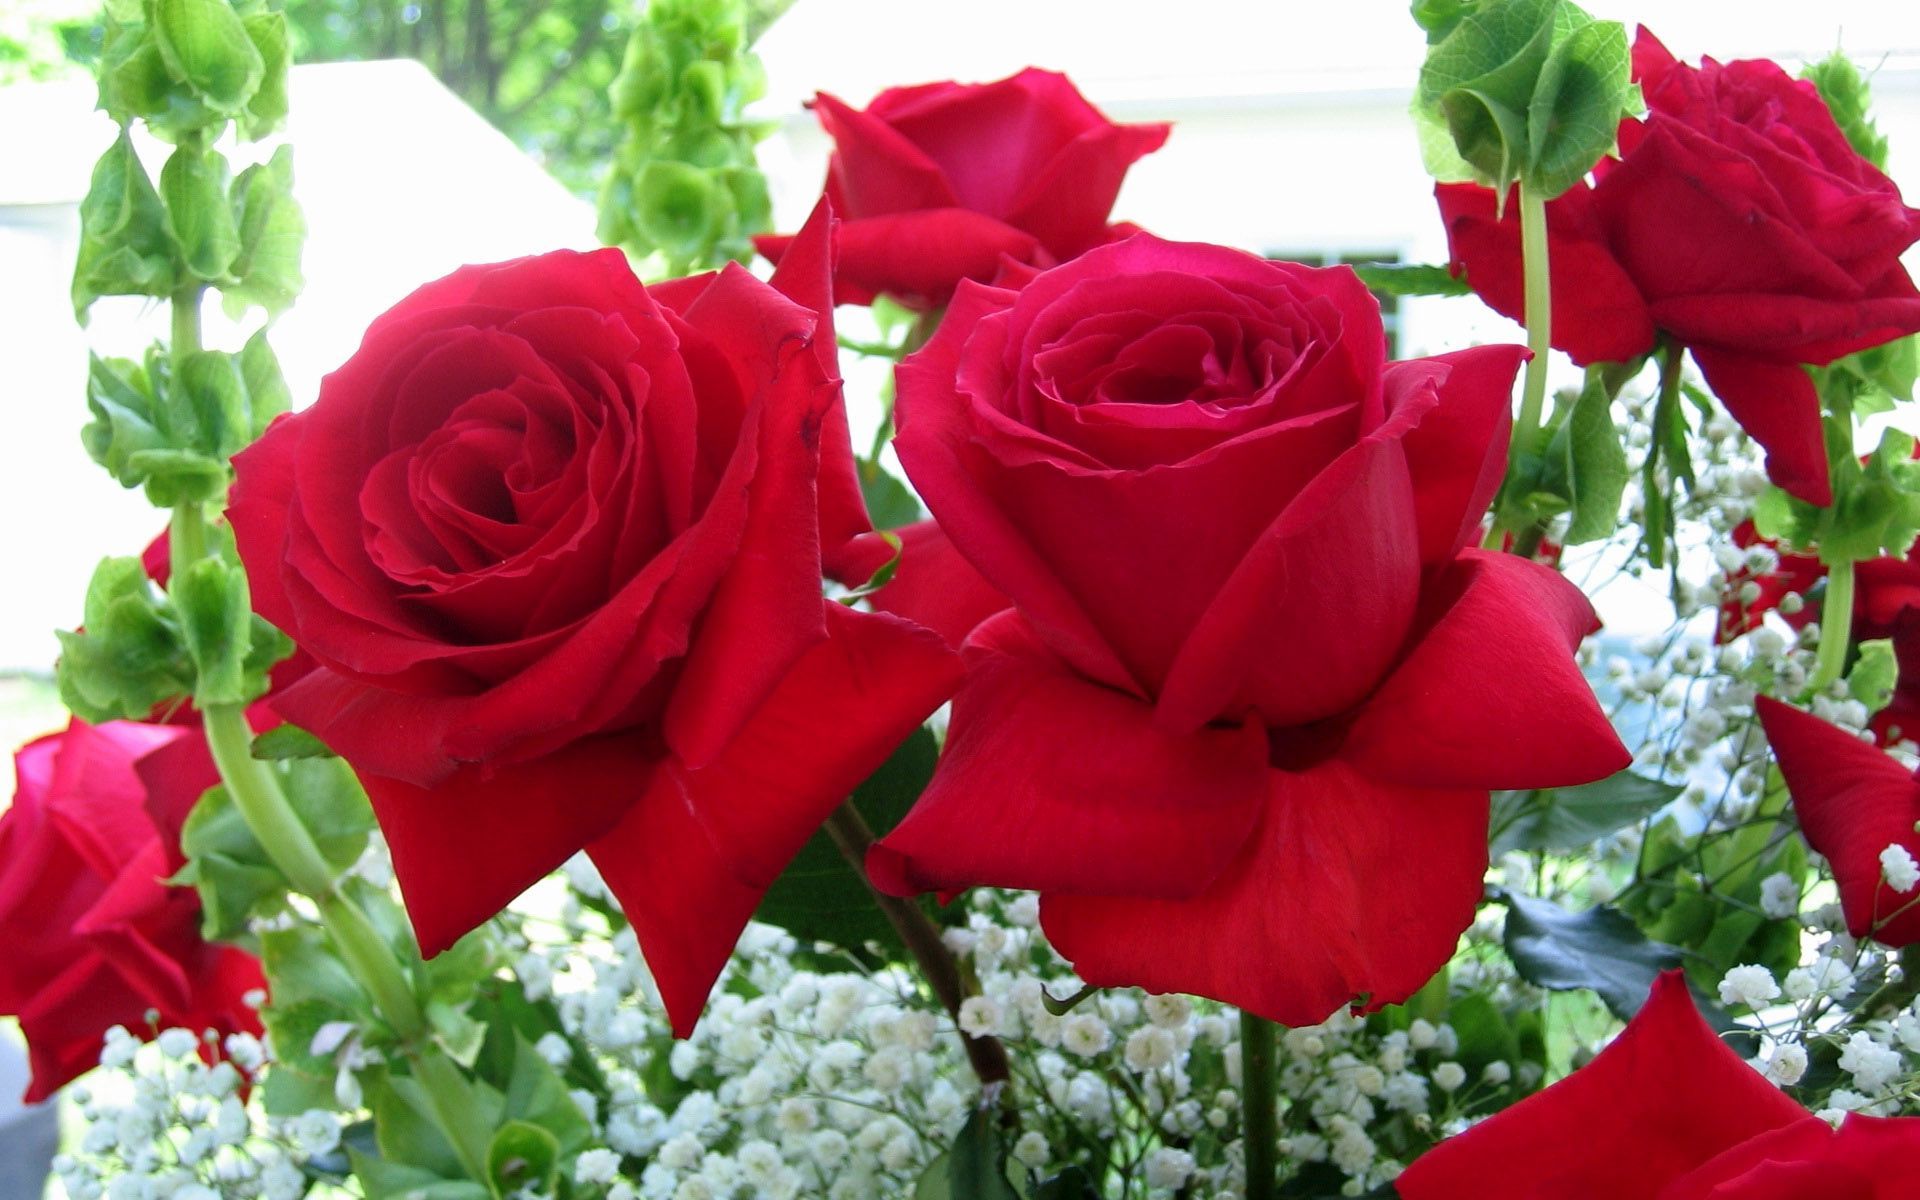 Hình những bông hoa hồng màu đỏ